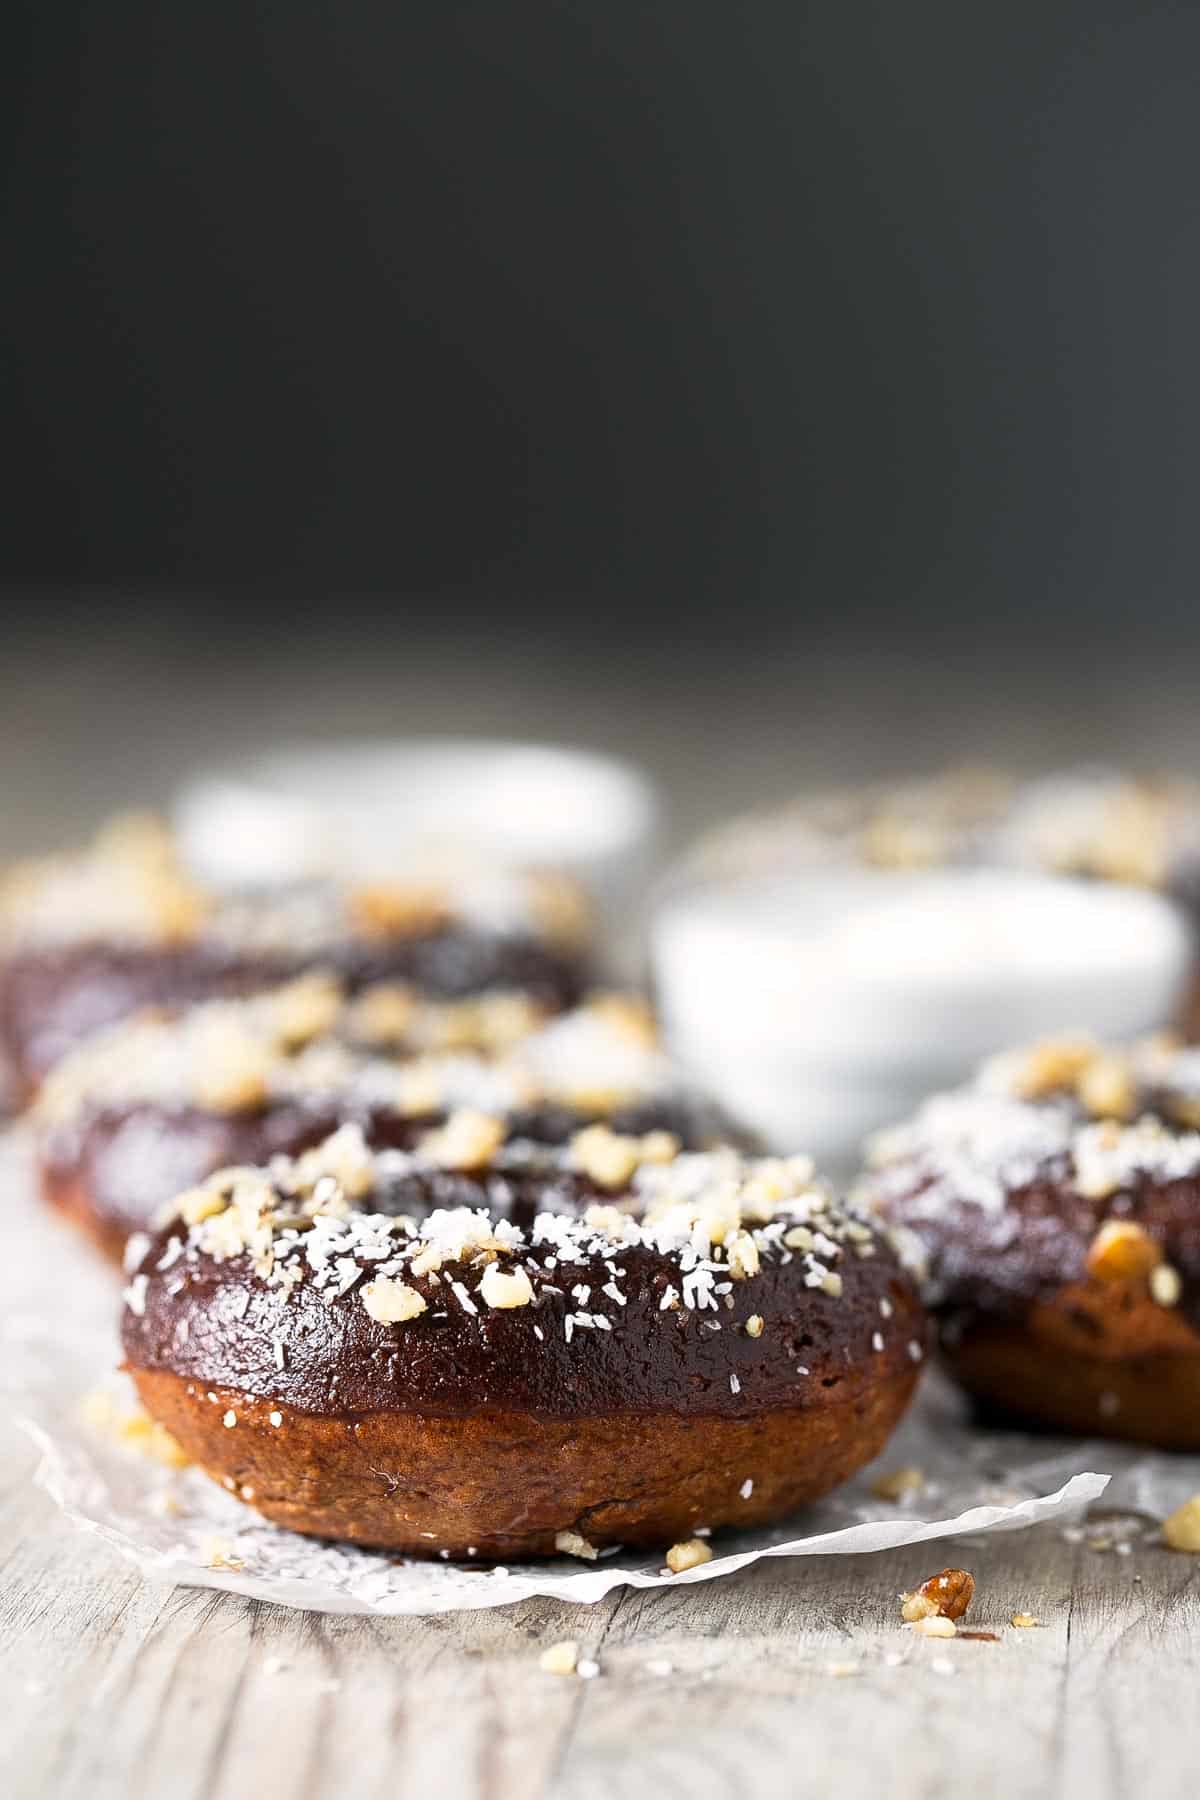 Donuts Veganos Saludables.- Estos donuts veganos saludables son bajos en grasa y perfectos para el día a día. La receta es increíblemente sencilla y el resultado espectacular.